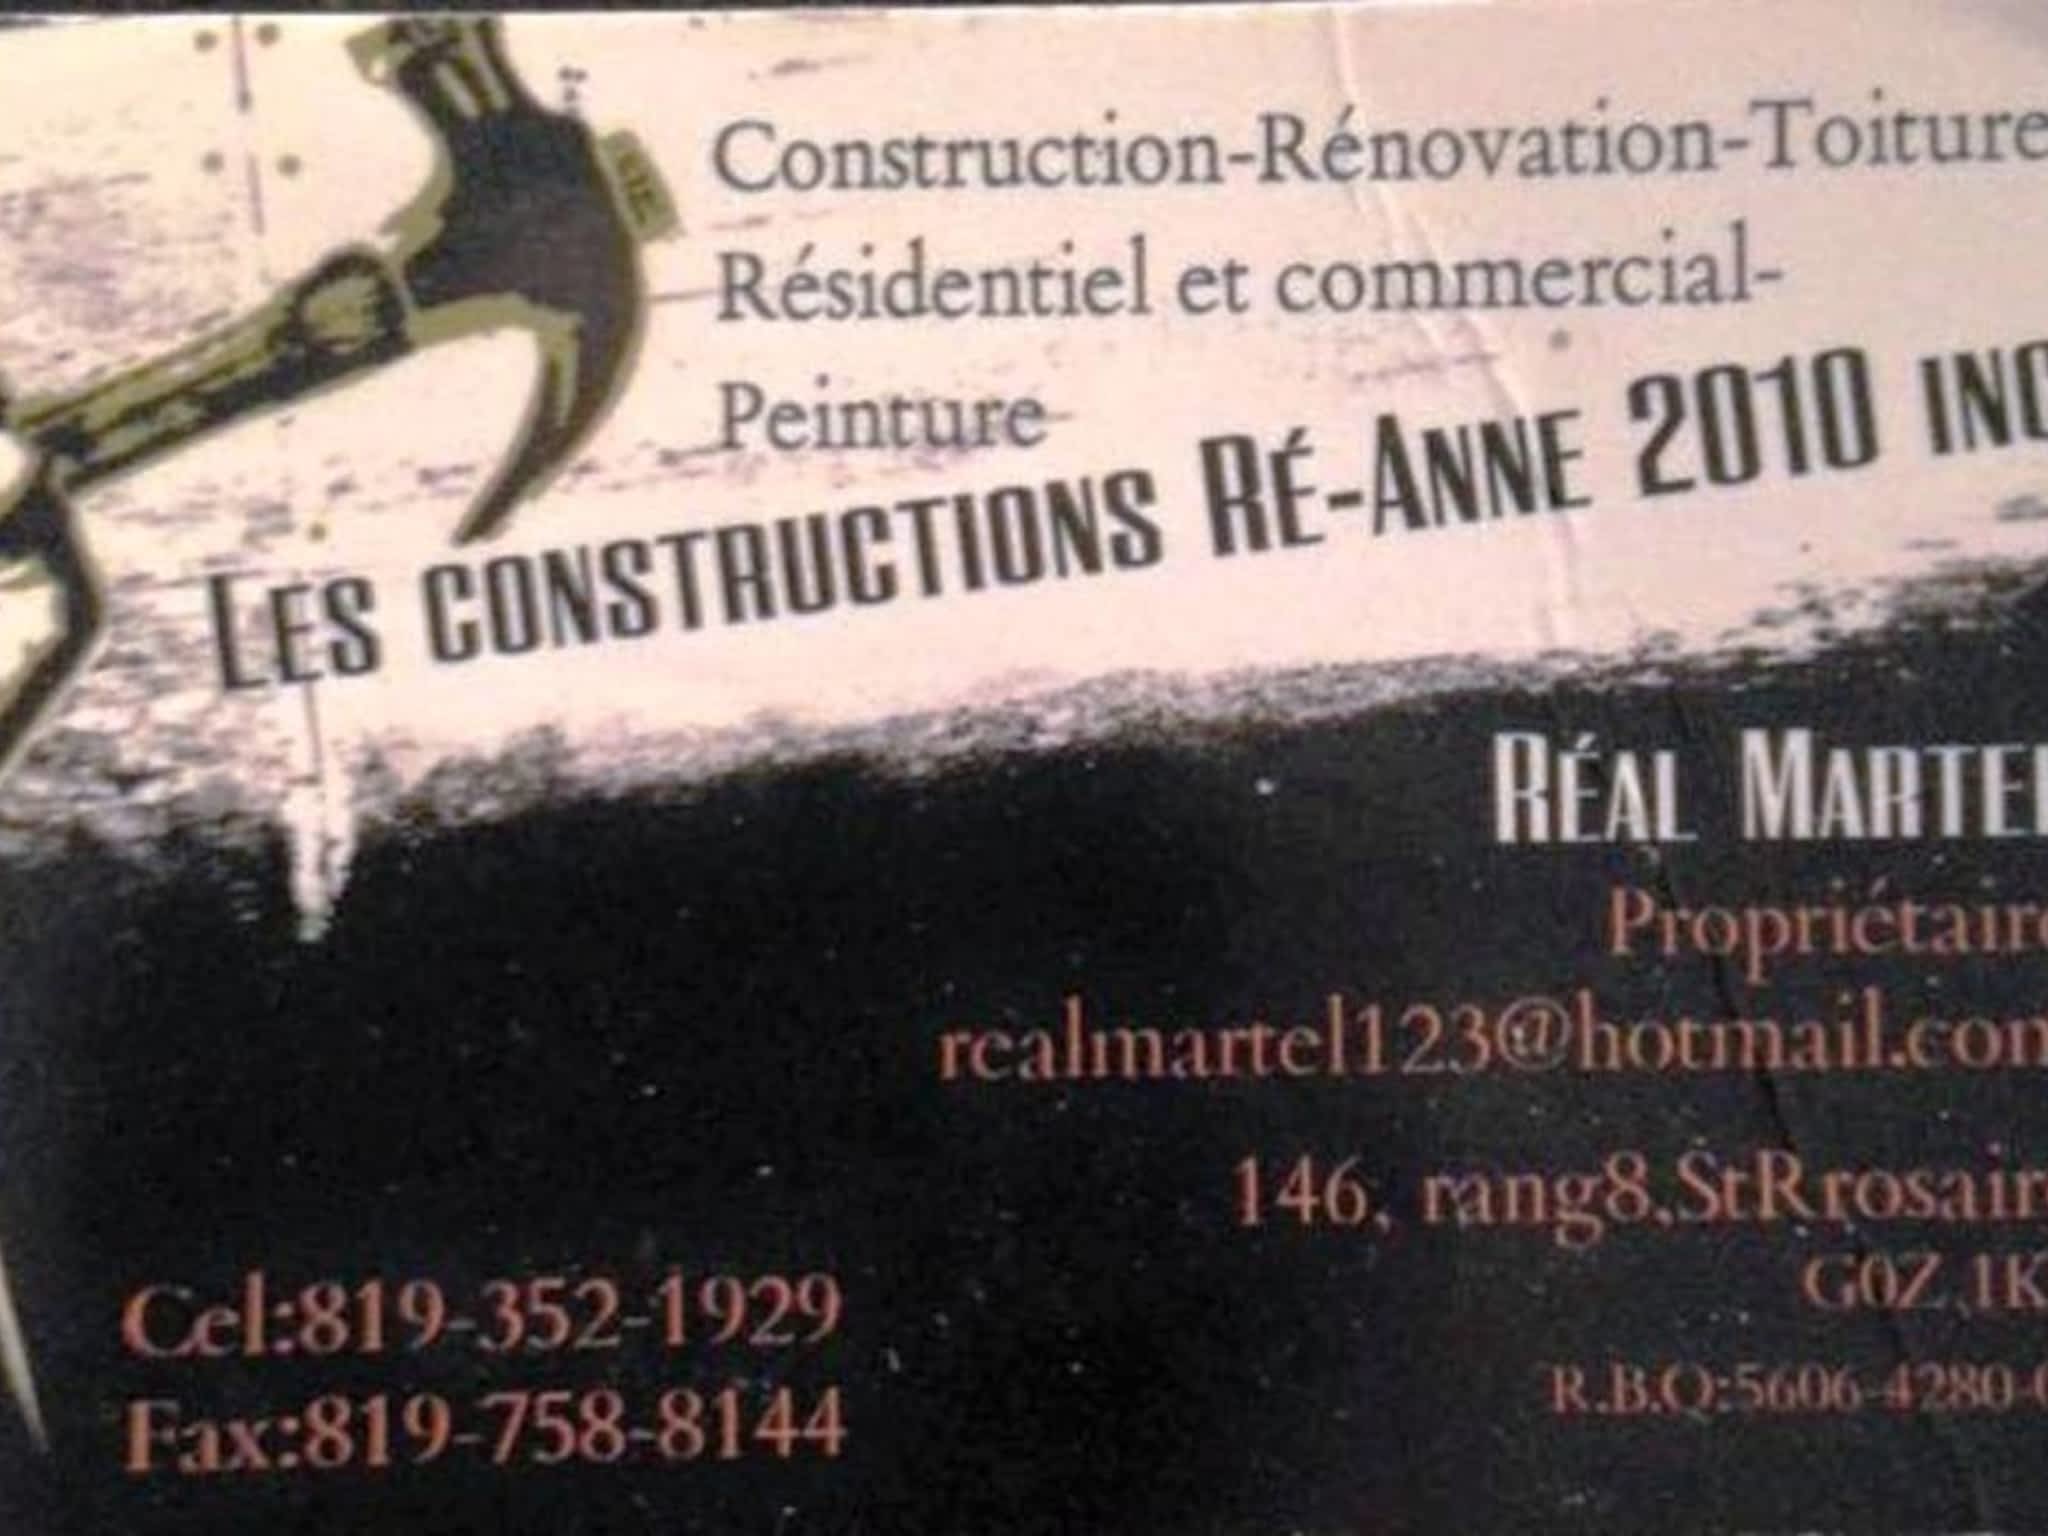 photo Les Constructions Ré-Anne 2010 inc